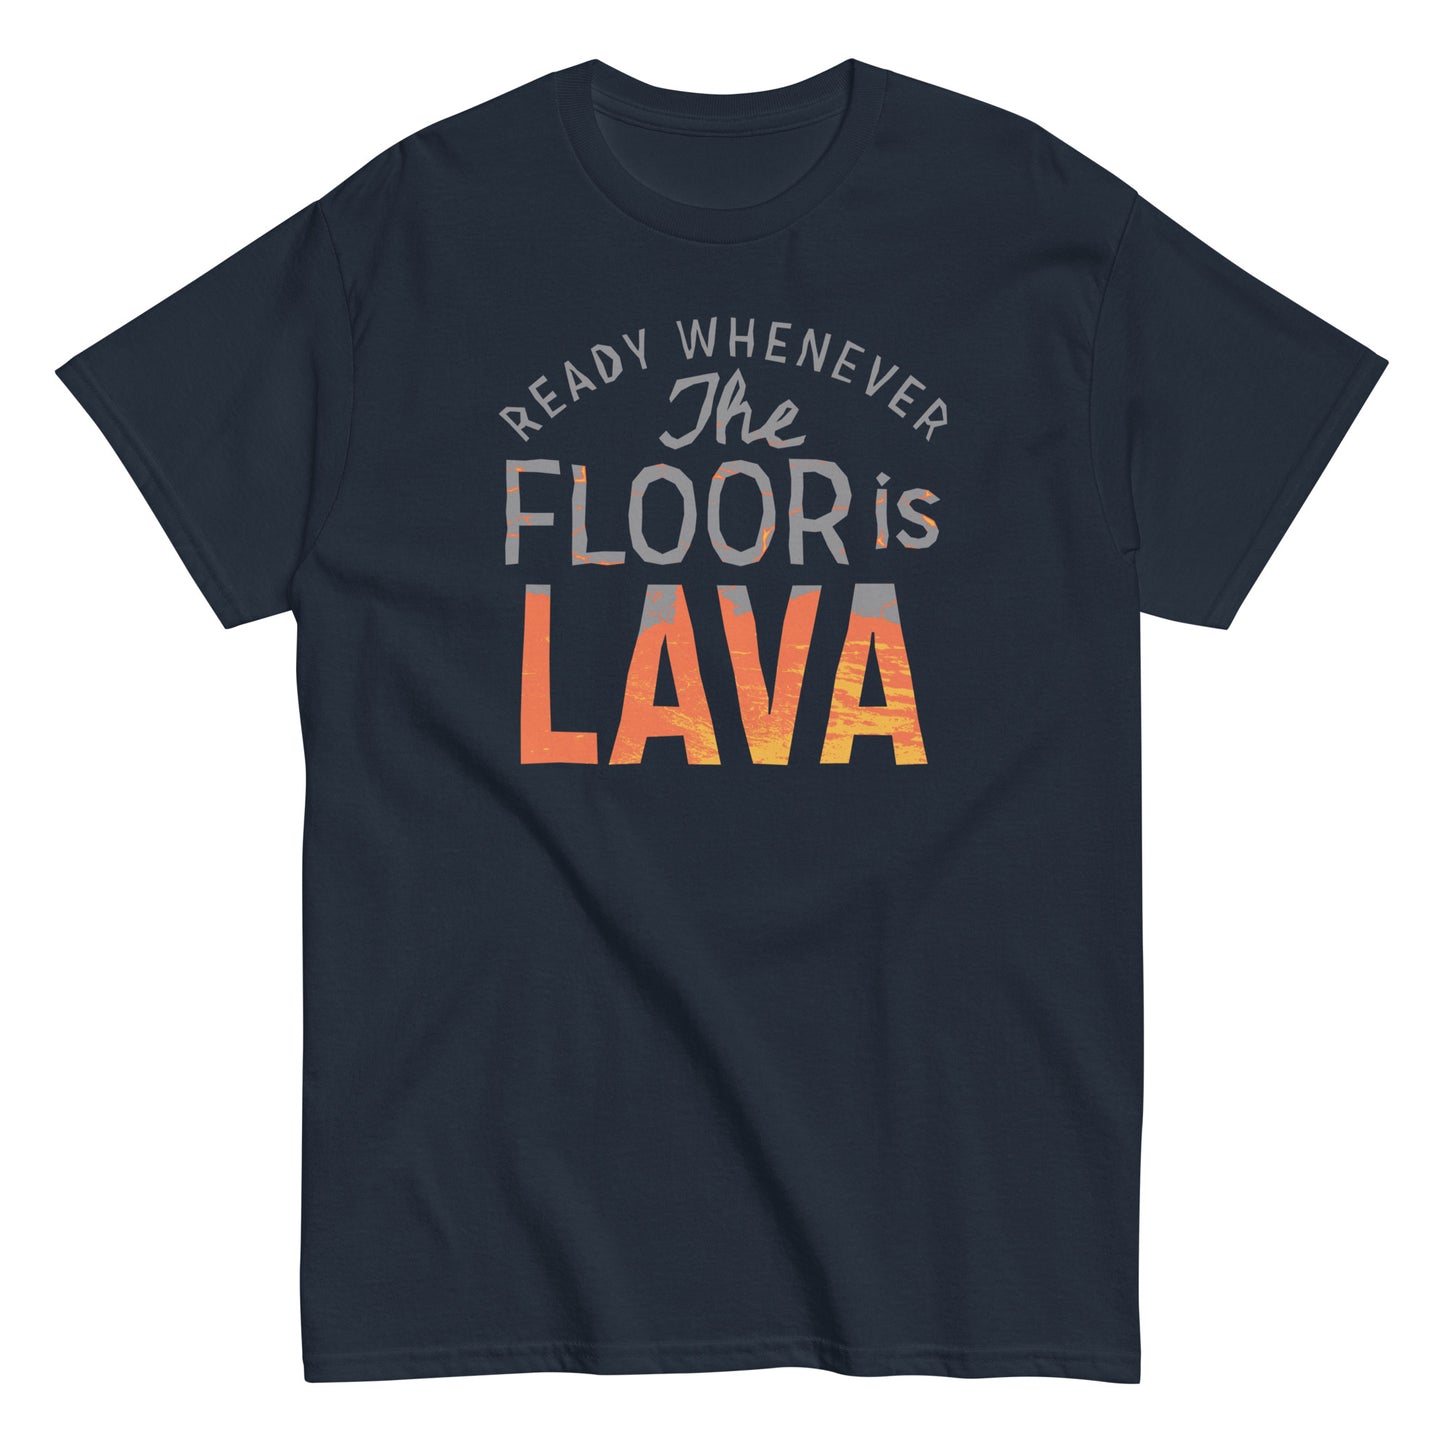 The Floor Is Lava Men's Classic Tee